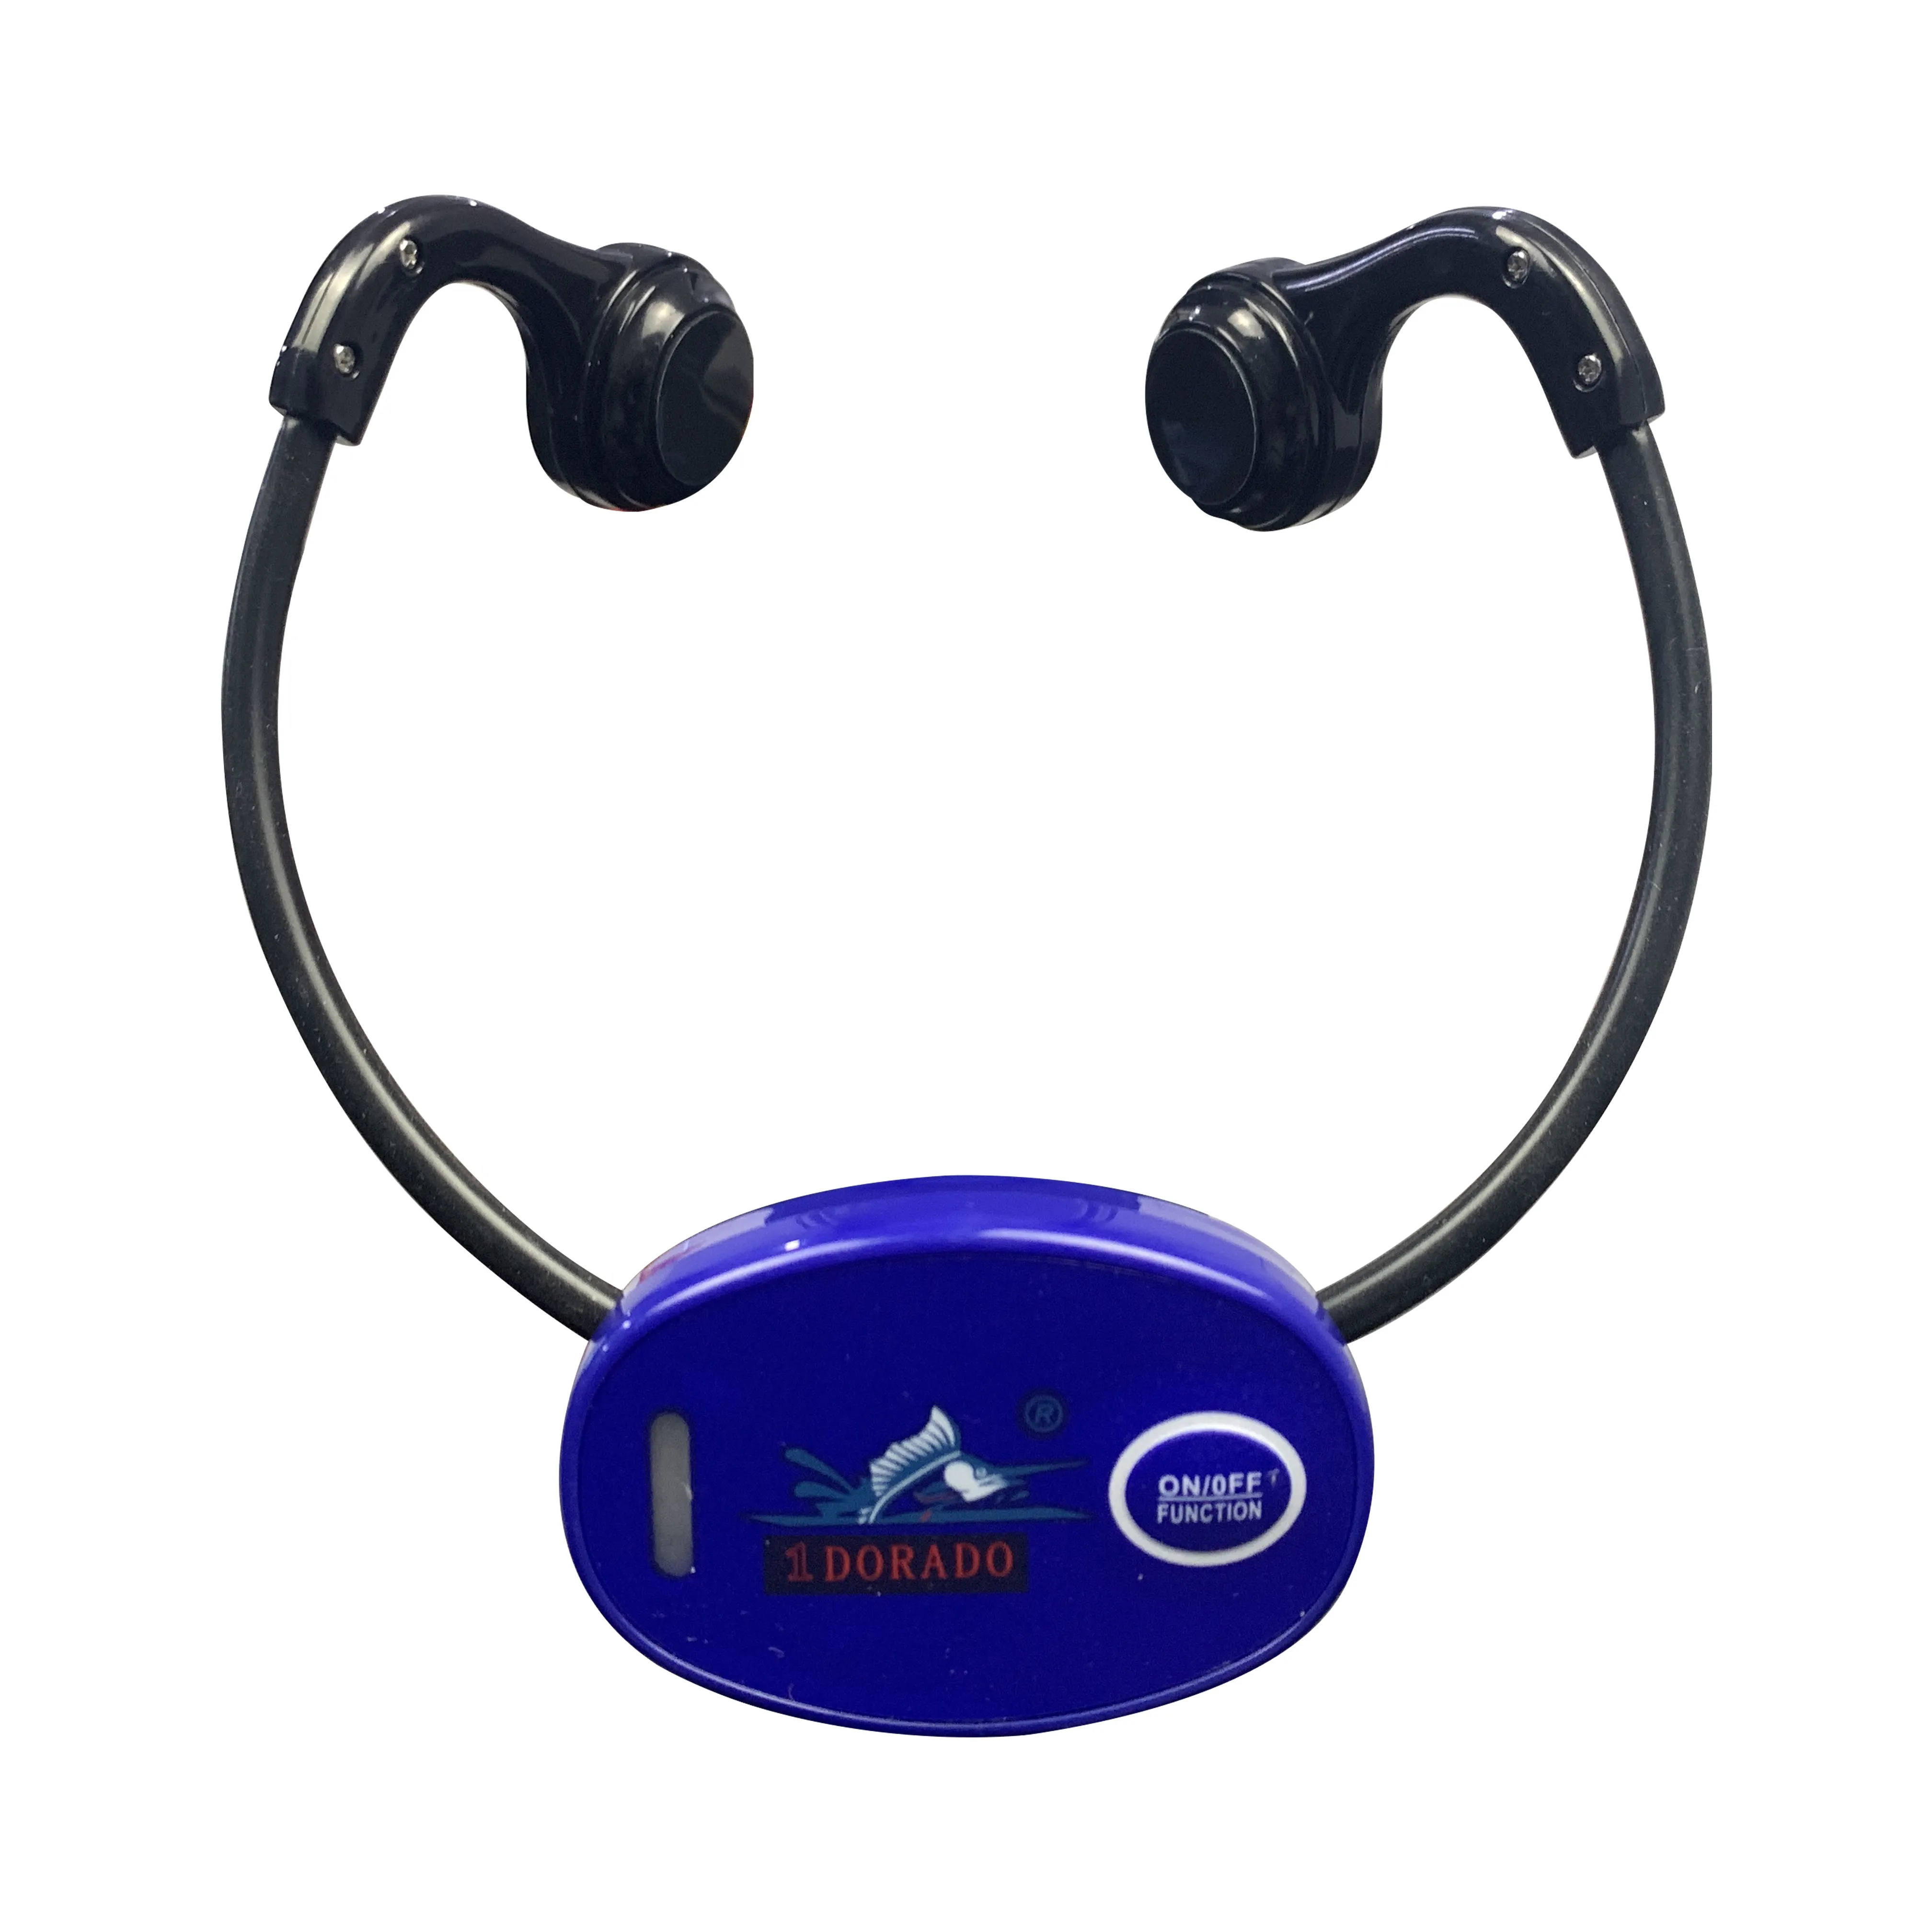 2022 Open Ear Hörgerät Schwimmen Teach FM Radio Empfangen Kopfhörer Knochen leitung Wandler Headset Kopfhörer Wireless